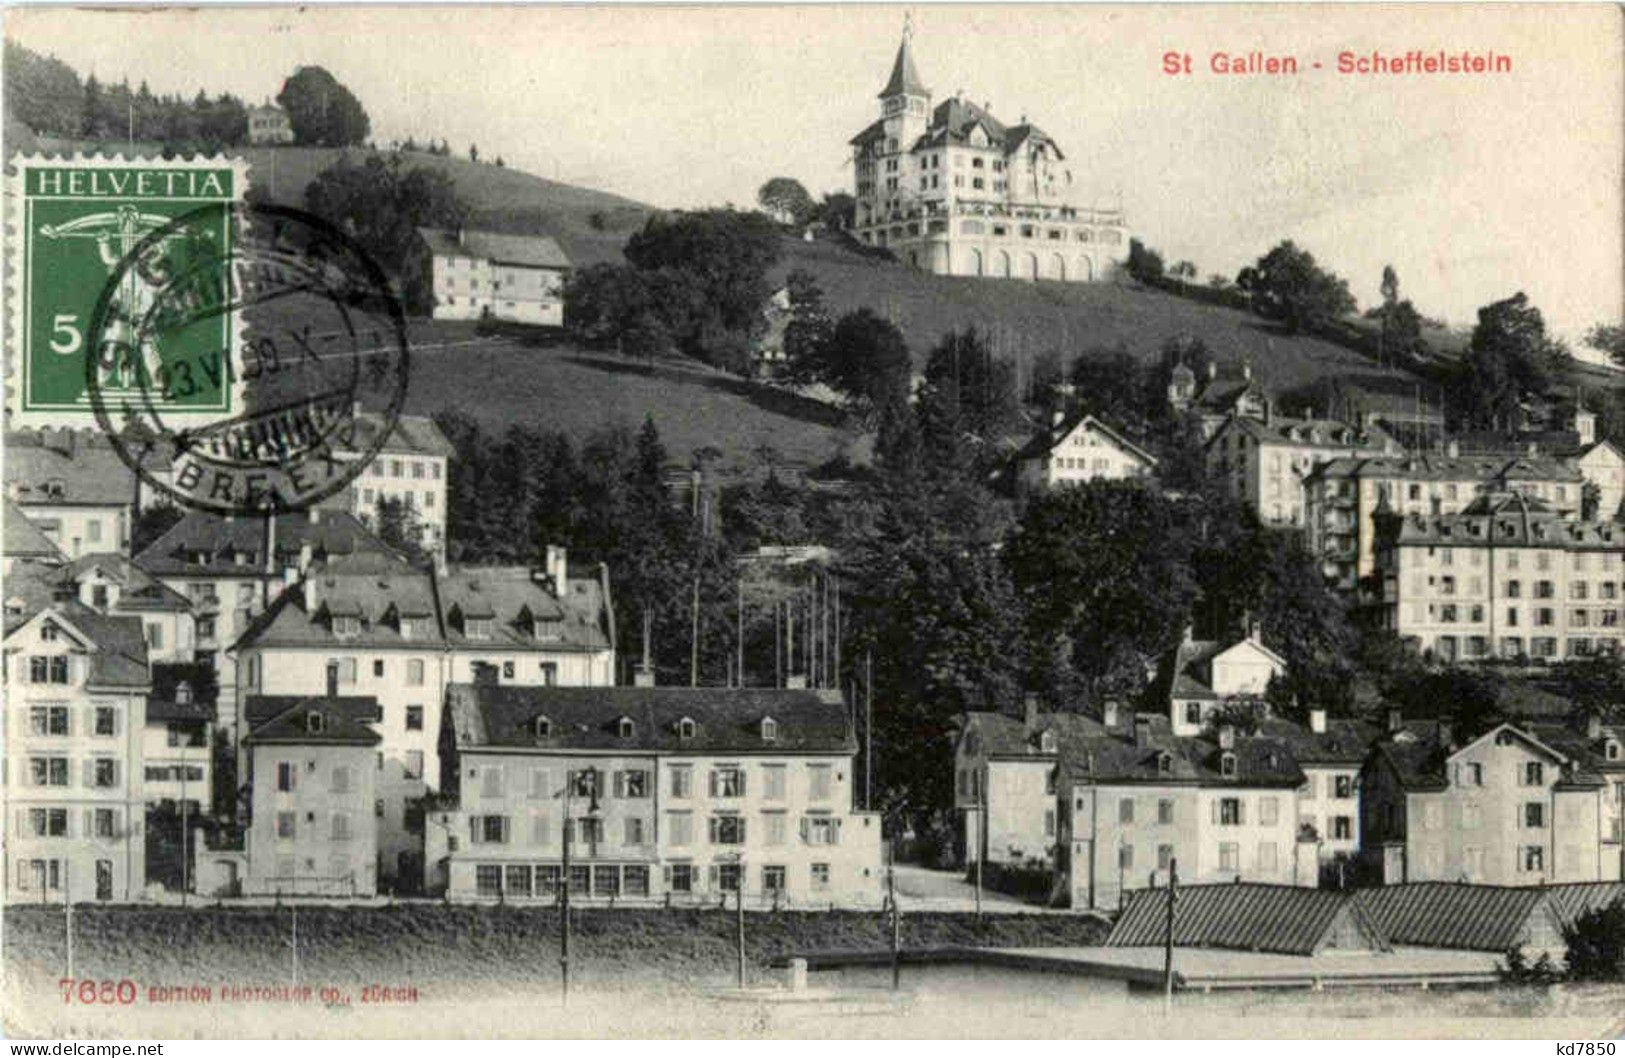 St. Gallen - Scheffelstein - St. Gallen